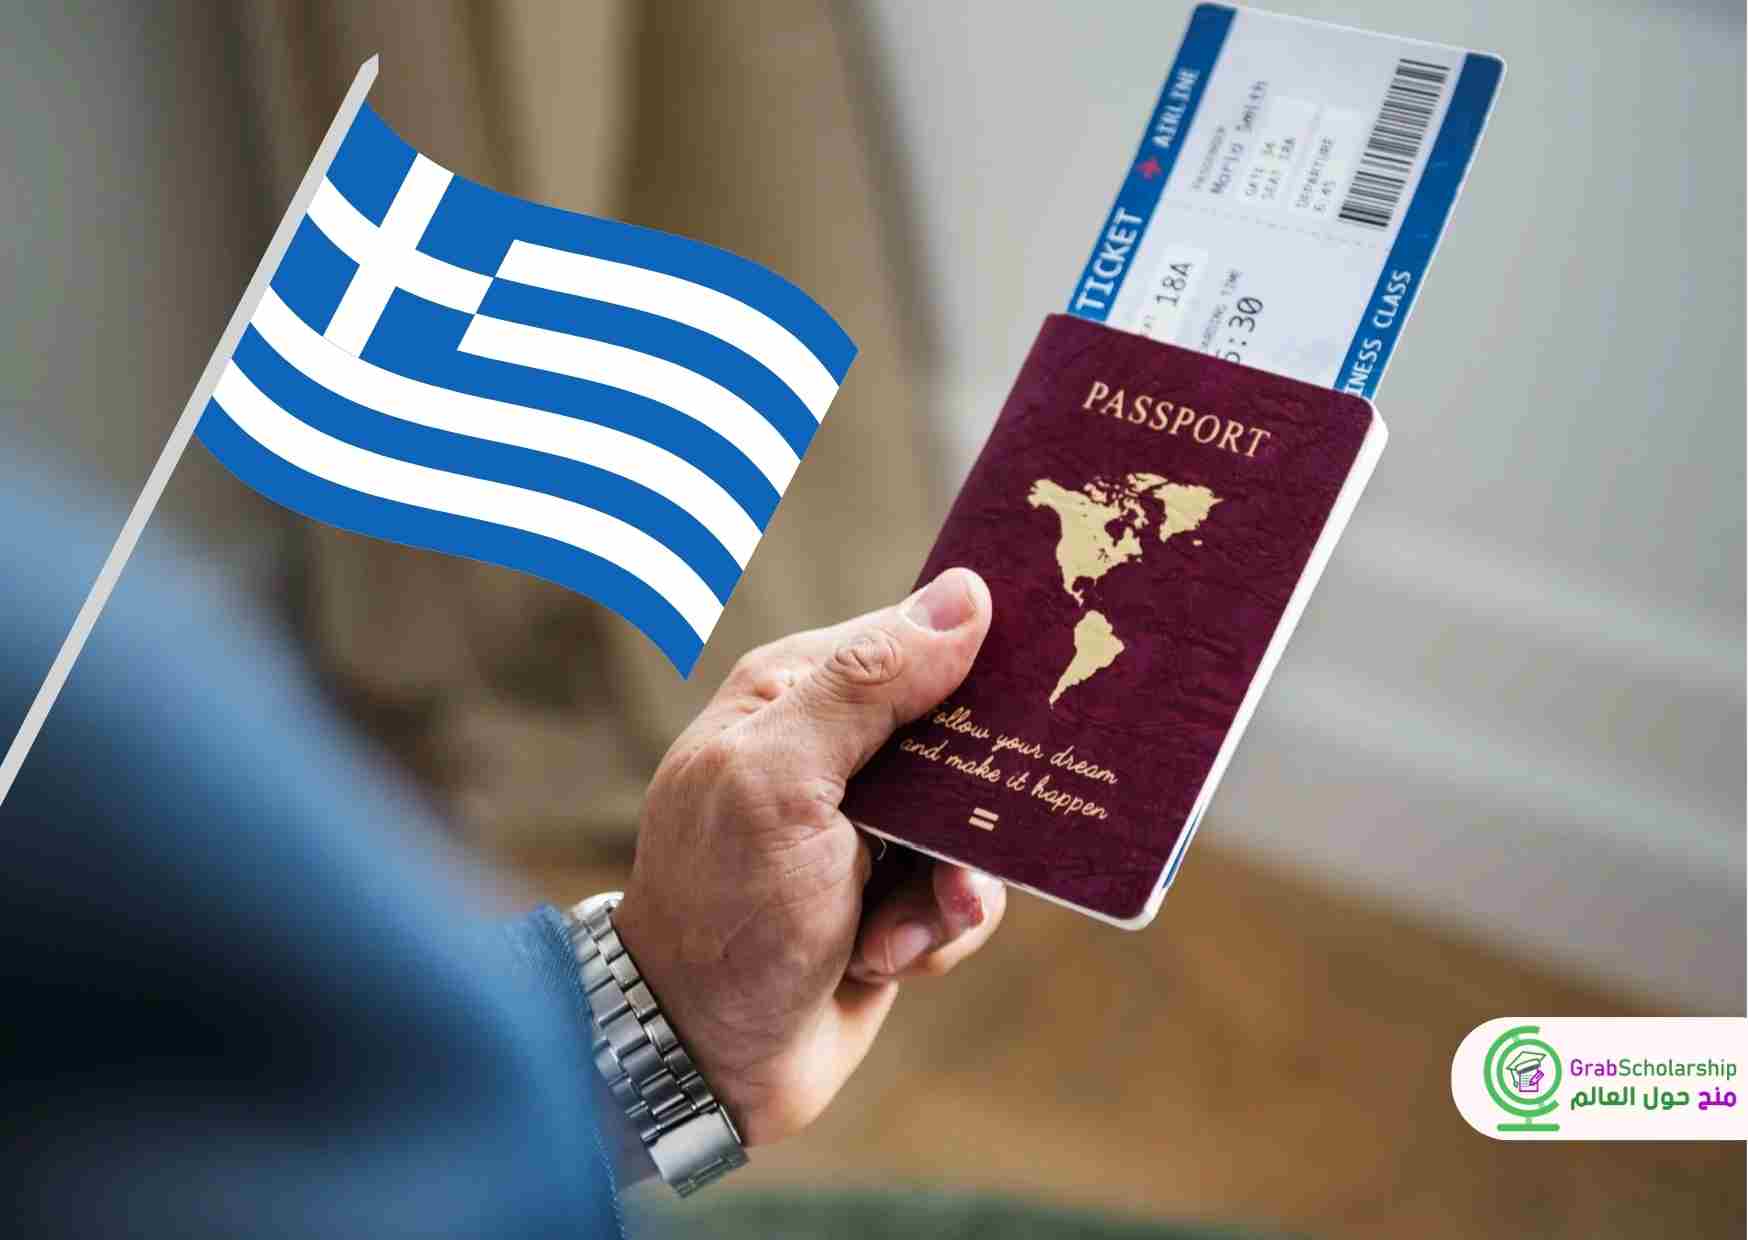 وظيفة براتب 3230 يورو للعمل في اليونان بعقد لمدة سنة